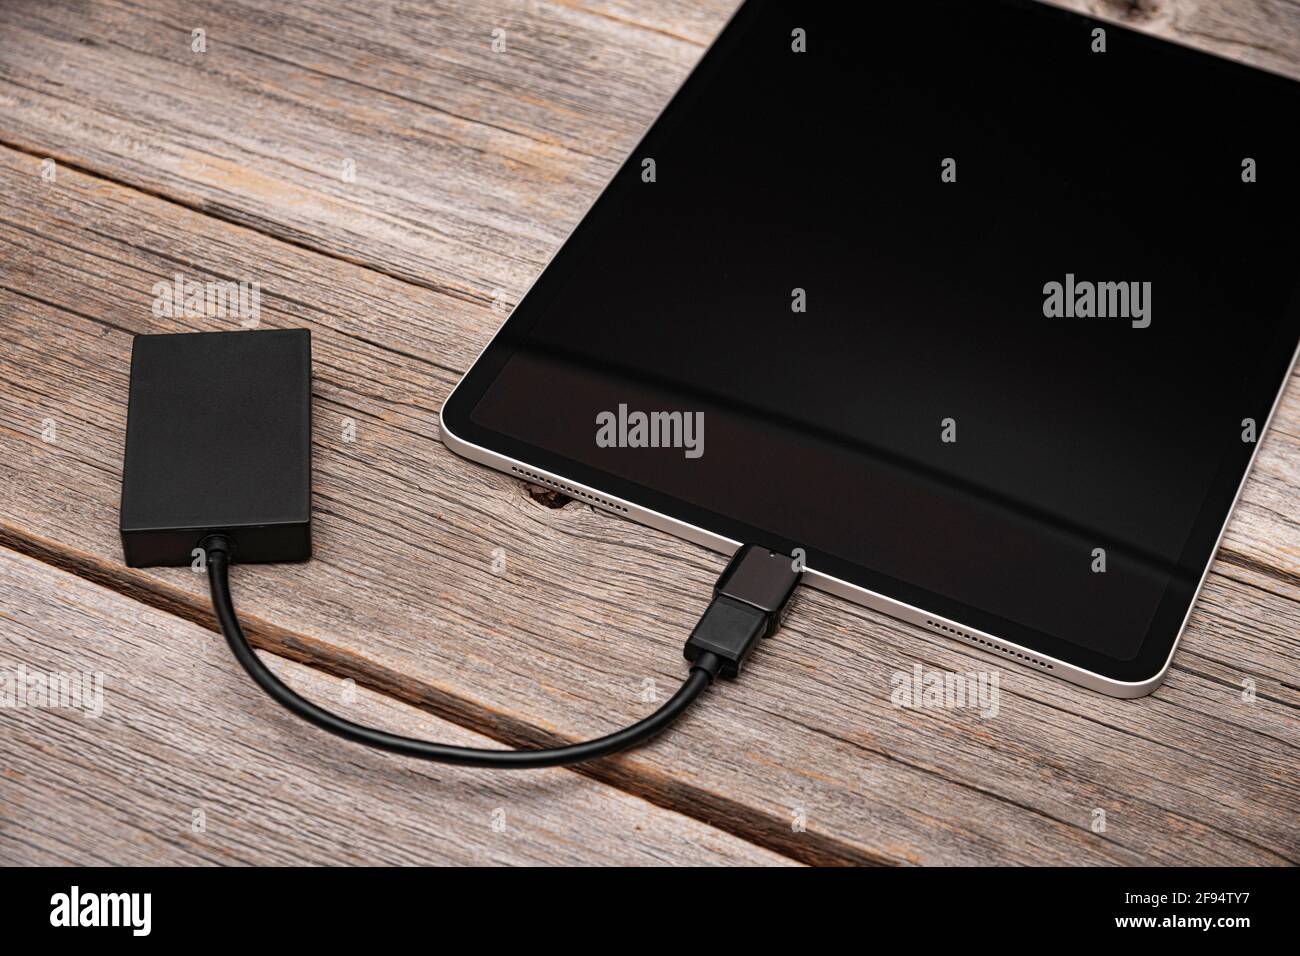 Eine Speicherkarte oder eine externe Festplatte ist mit dem Tablet PC  verbunden Stockfotografie - Alamy